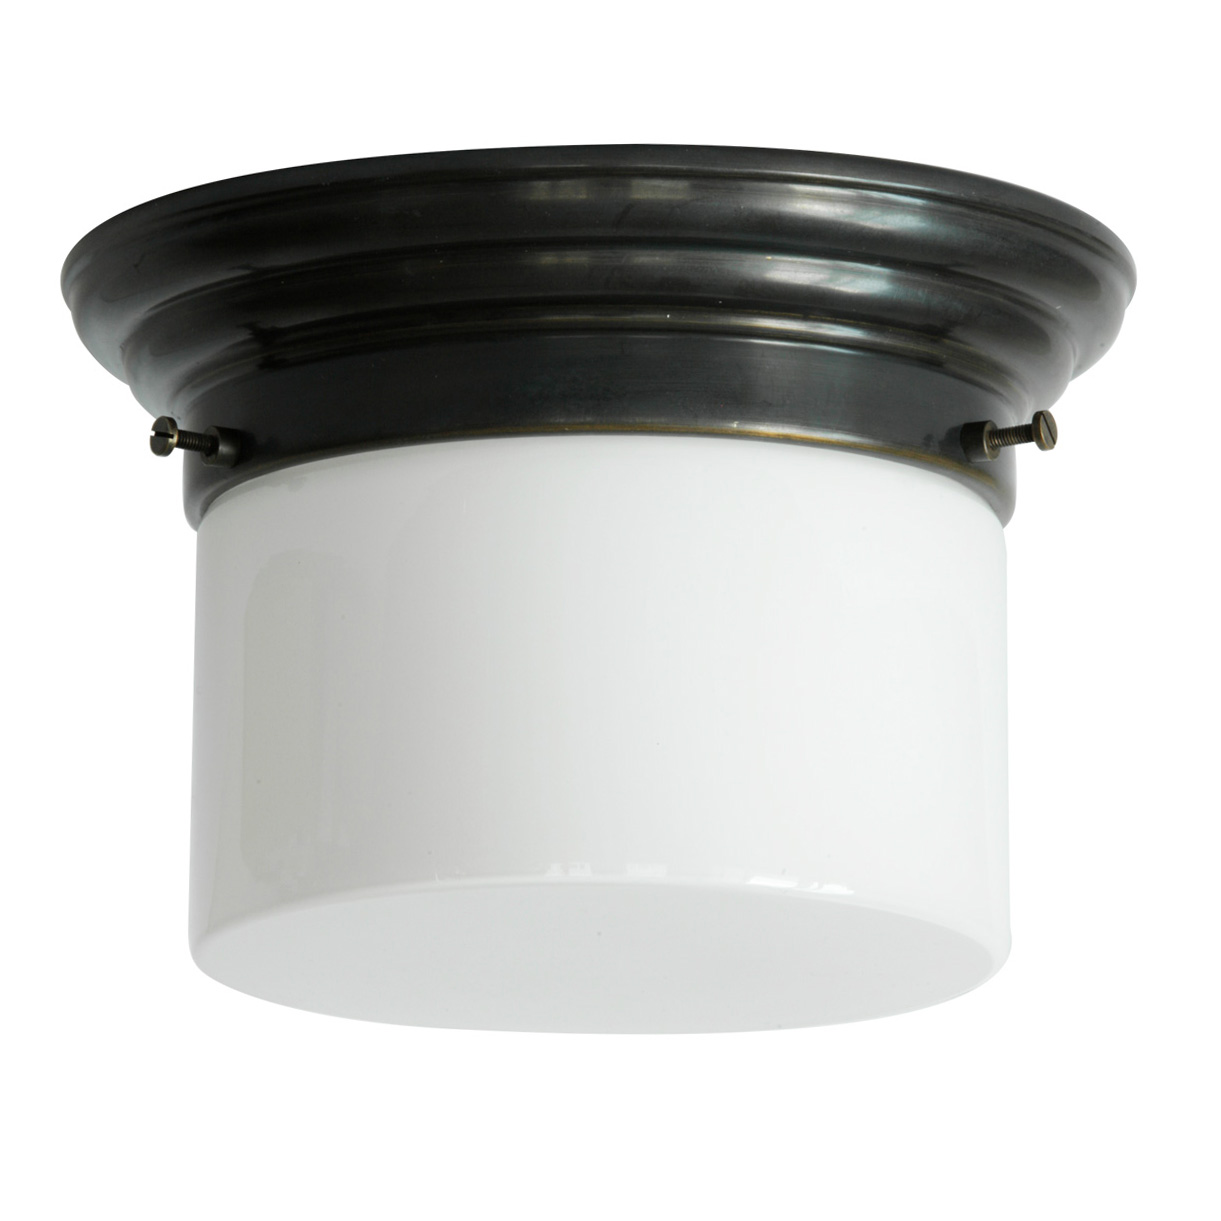 Art déco-Deckenlampe mit Zylinder-Opalglas Ø 16/21 cm: Tuben-Deckenleuchte, abgebildet mit dunkel patiniertem Deckenteil, Modell 1